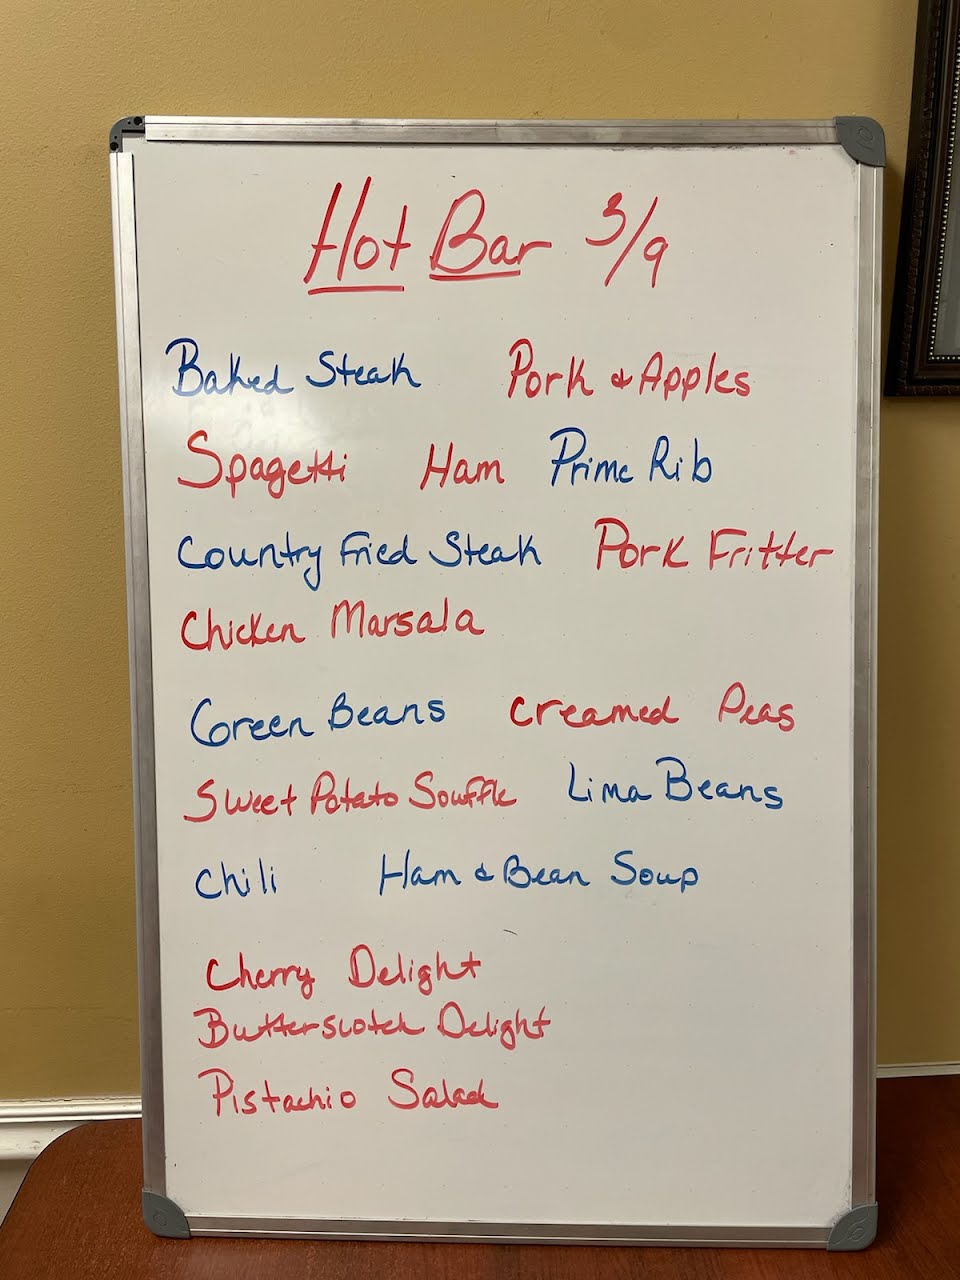 Hot Bar Buffet Menu for Wednesday March 9